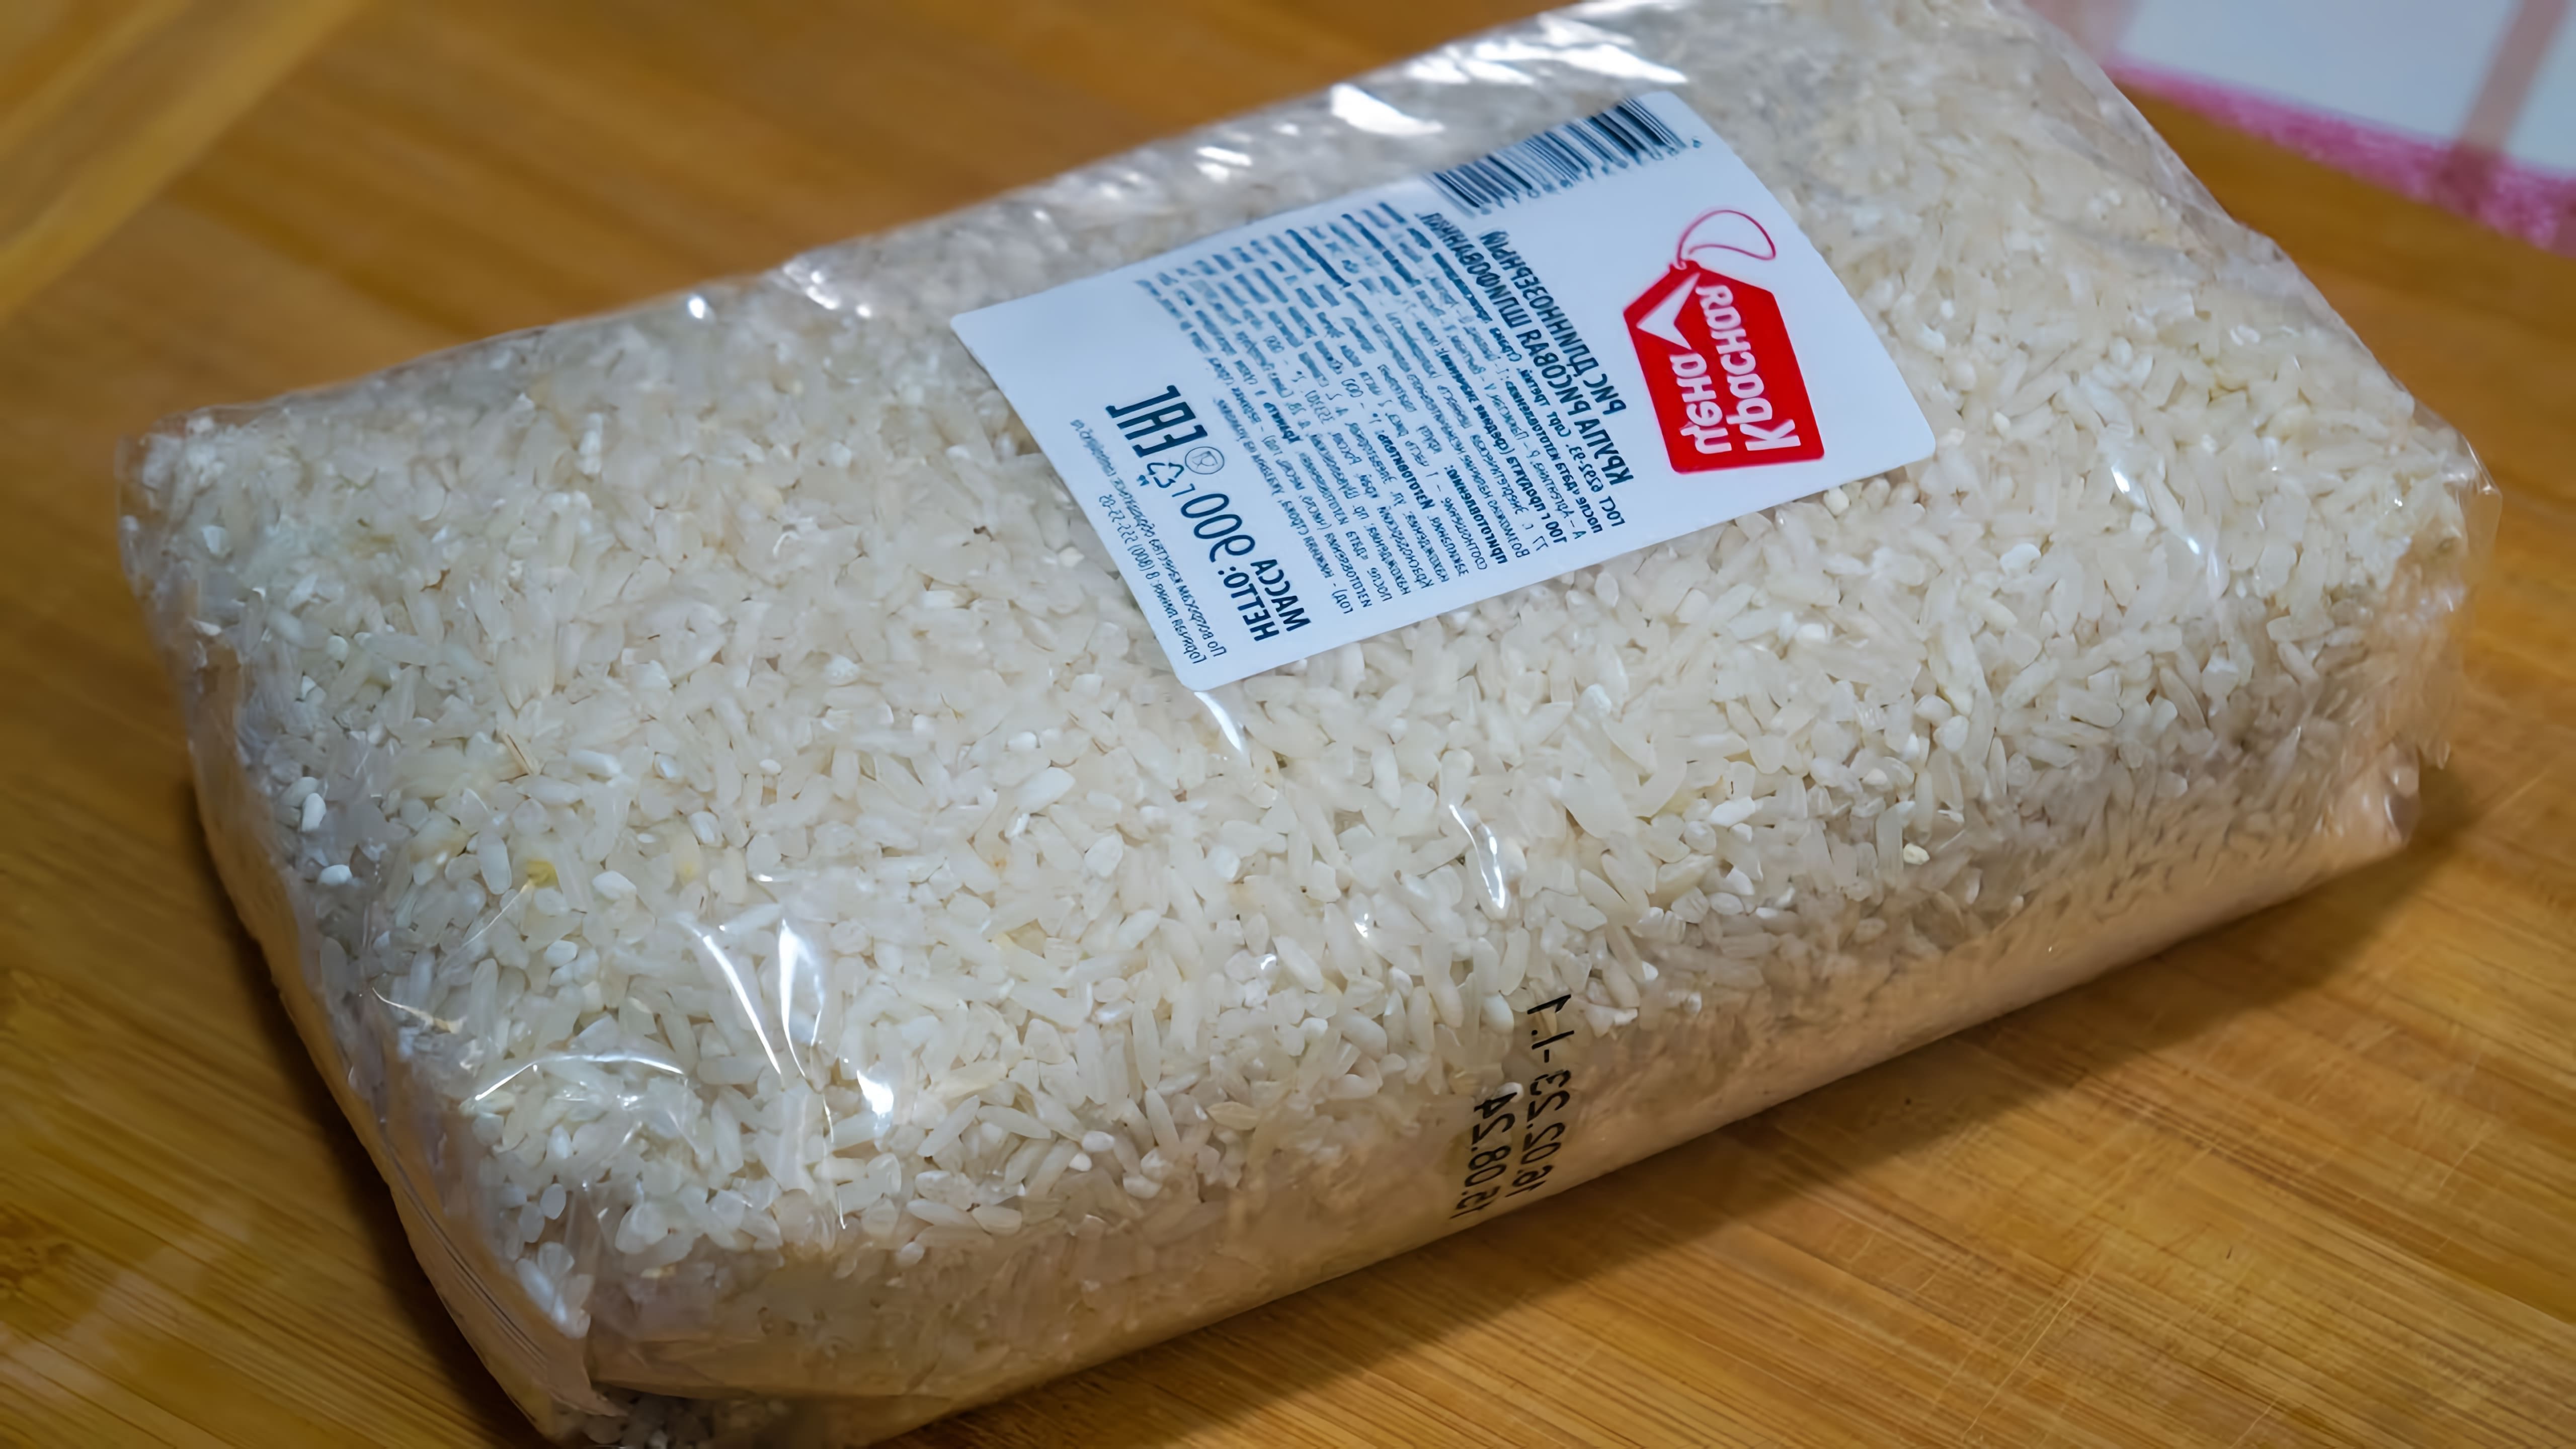 Видео как приготовить воздушный плов даже из самого дешевого сорта риса под названием "Красная Цена"